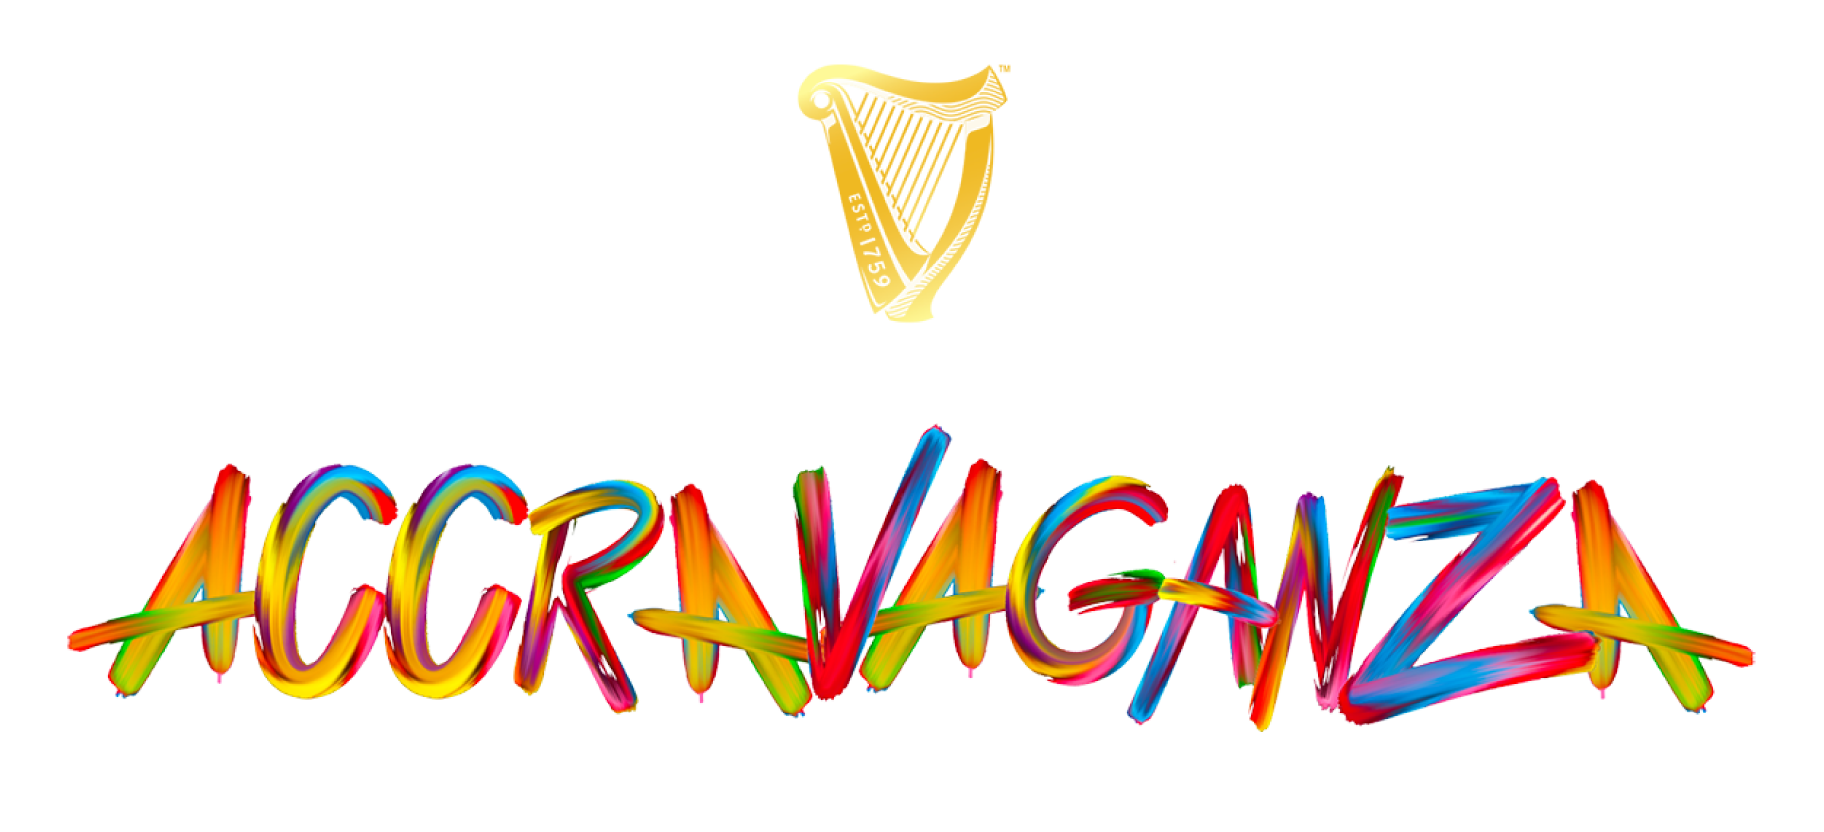 Guinness  - ACCRAVAGANZA